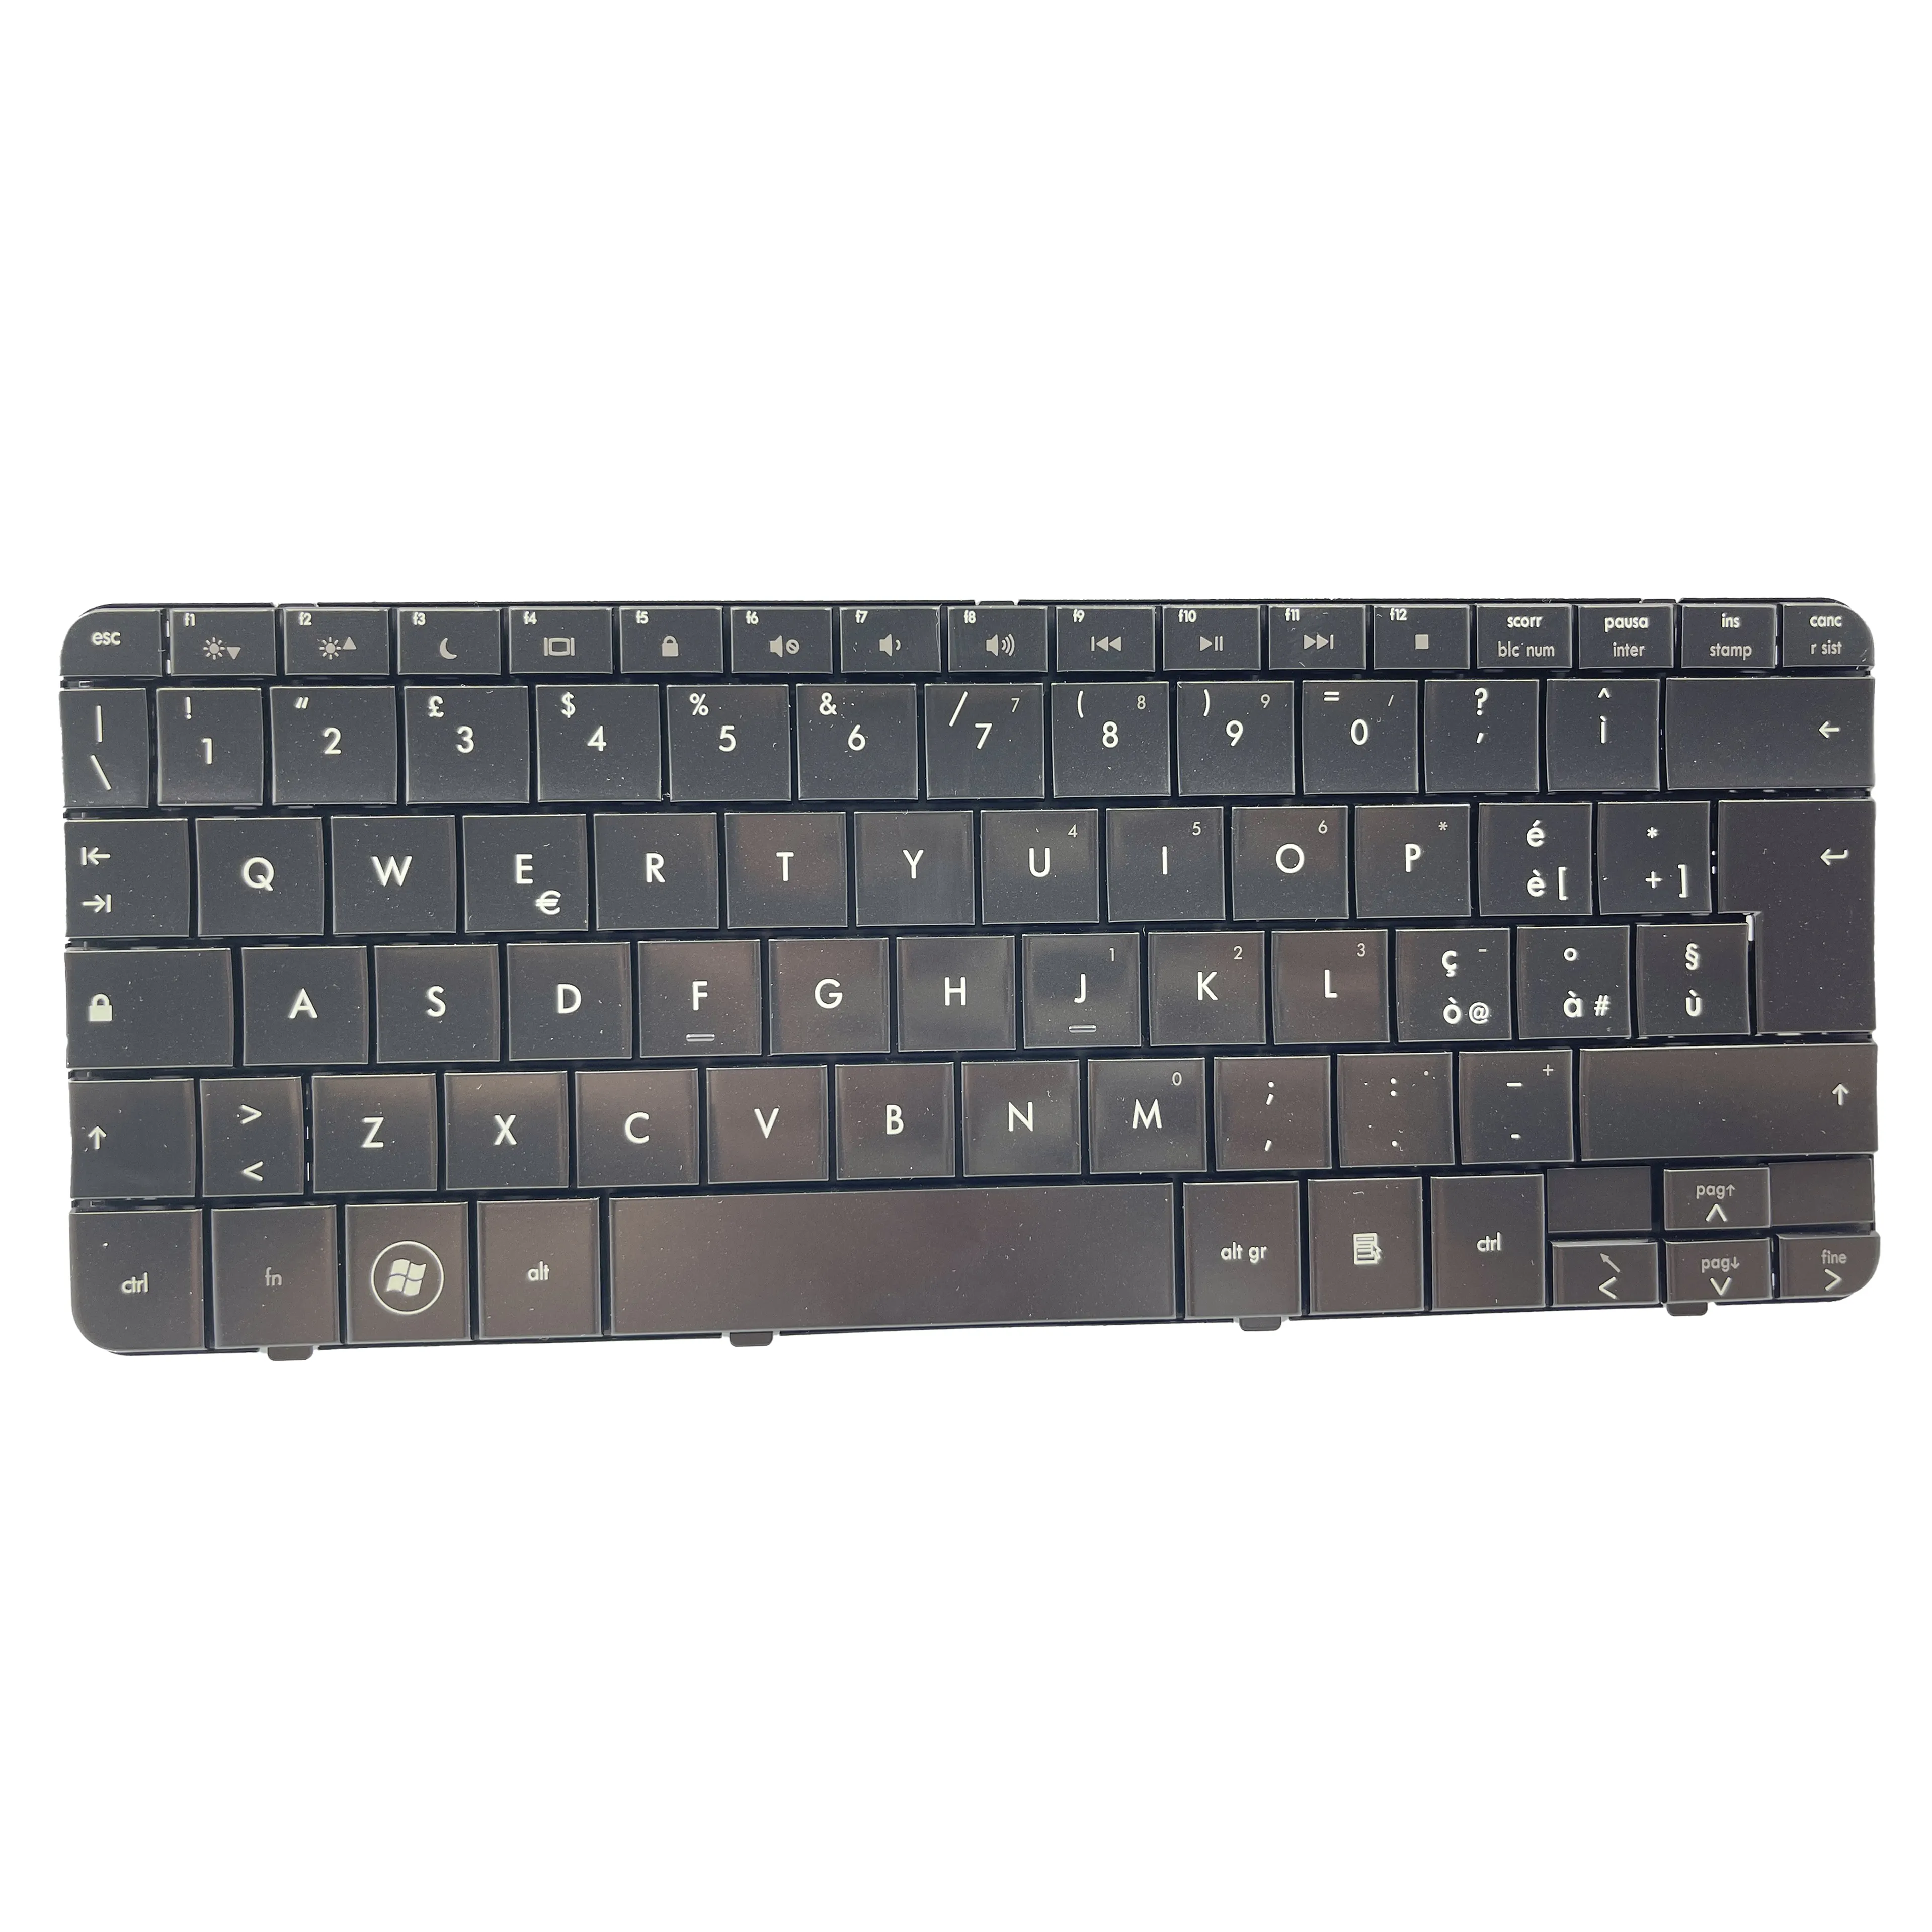 New Laptop Italian keyboard For HP Pavilion DV2 DV2-1000 black IT Keyboard Layout